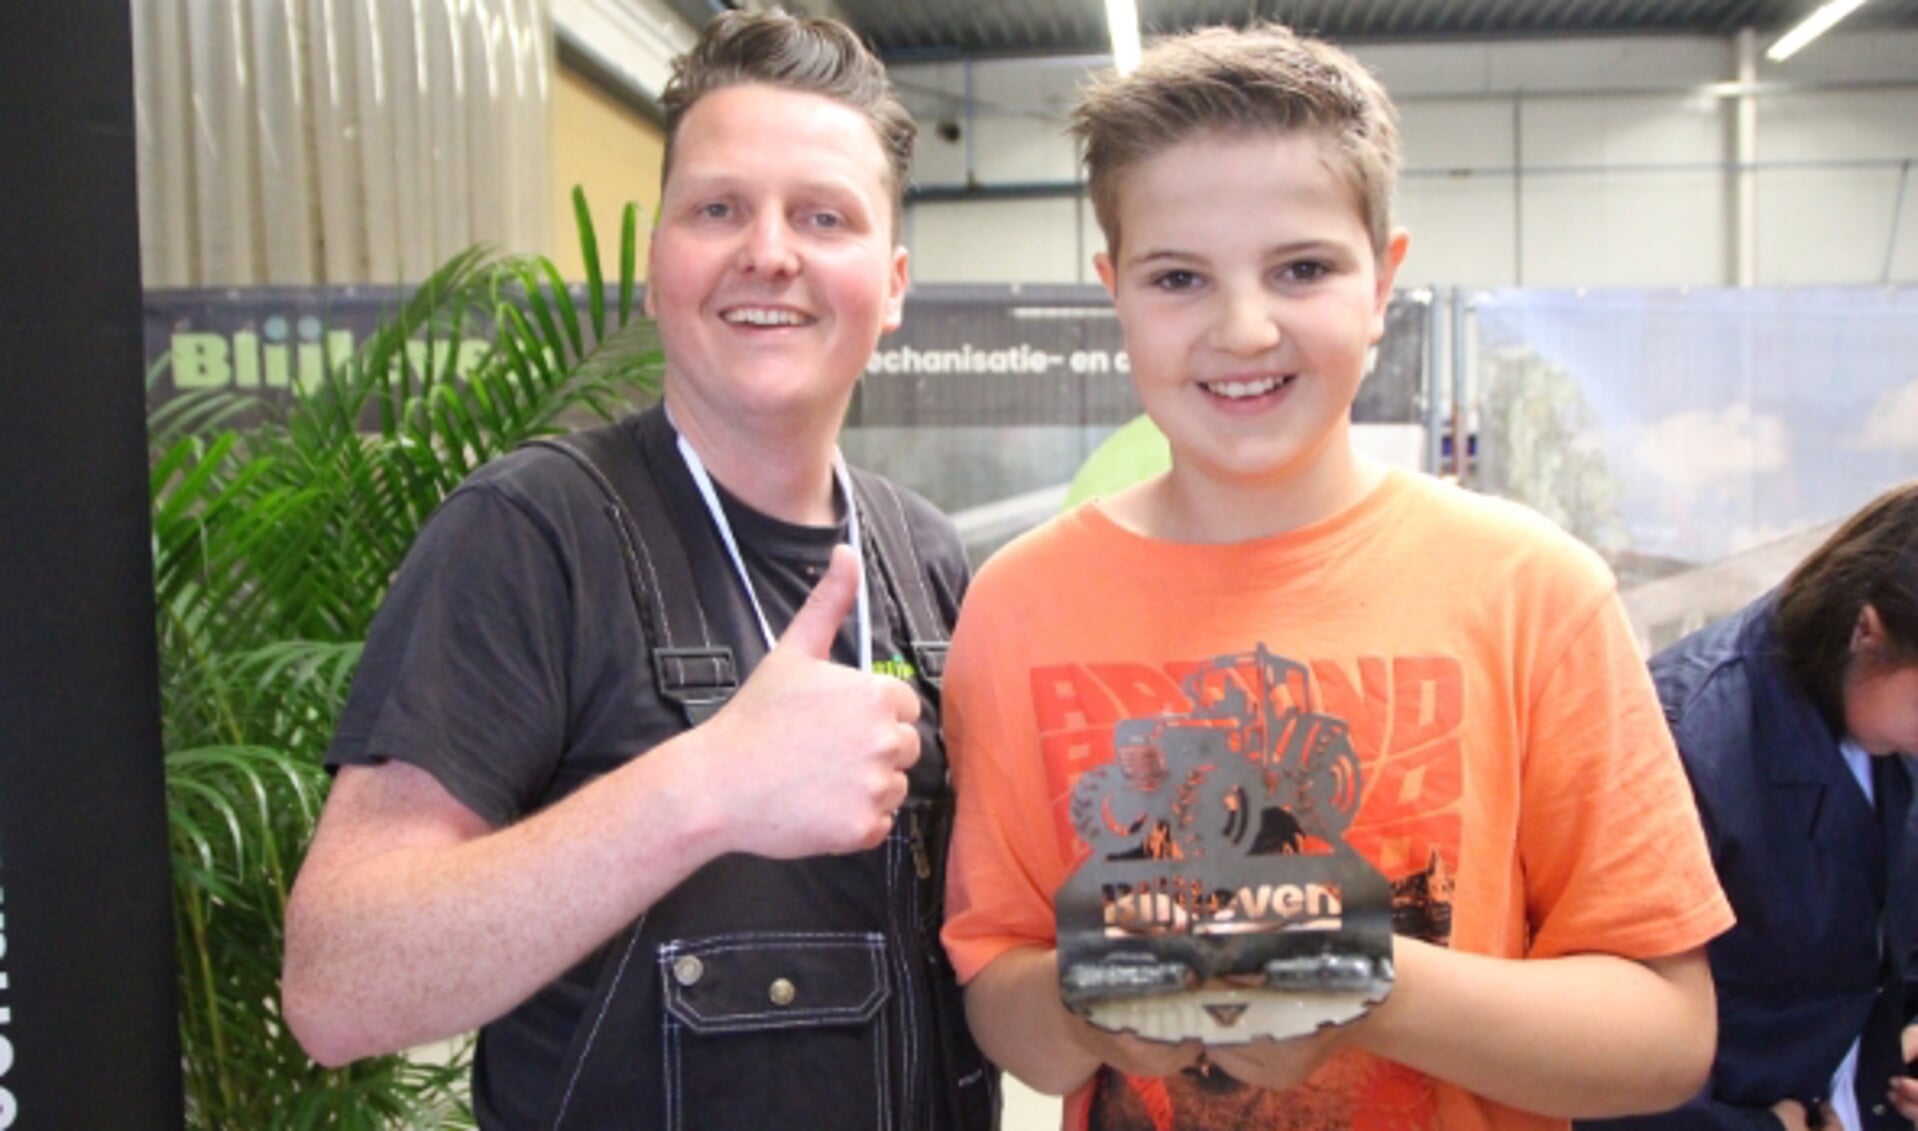 De elfjarige Thomas met zijn allereerste 'lasproduct'. Links Patrick Blijleven.